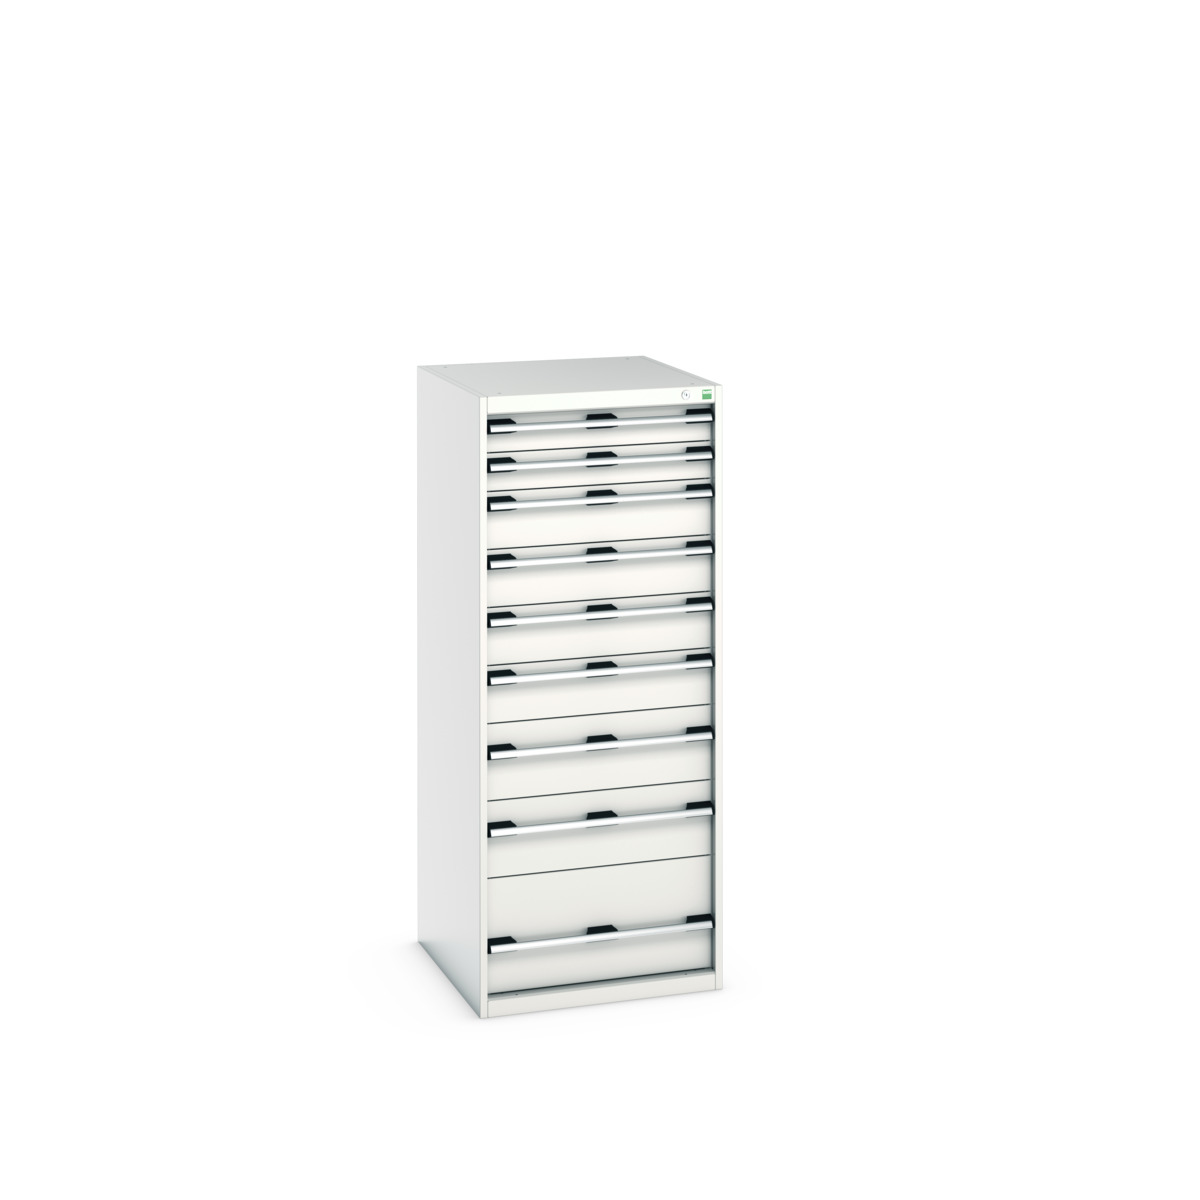 40027045.16V - cubio drawer cabinet